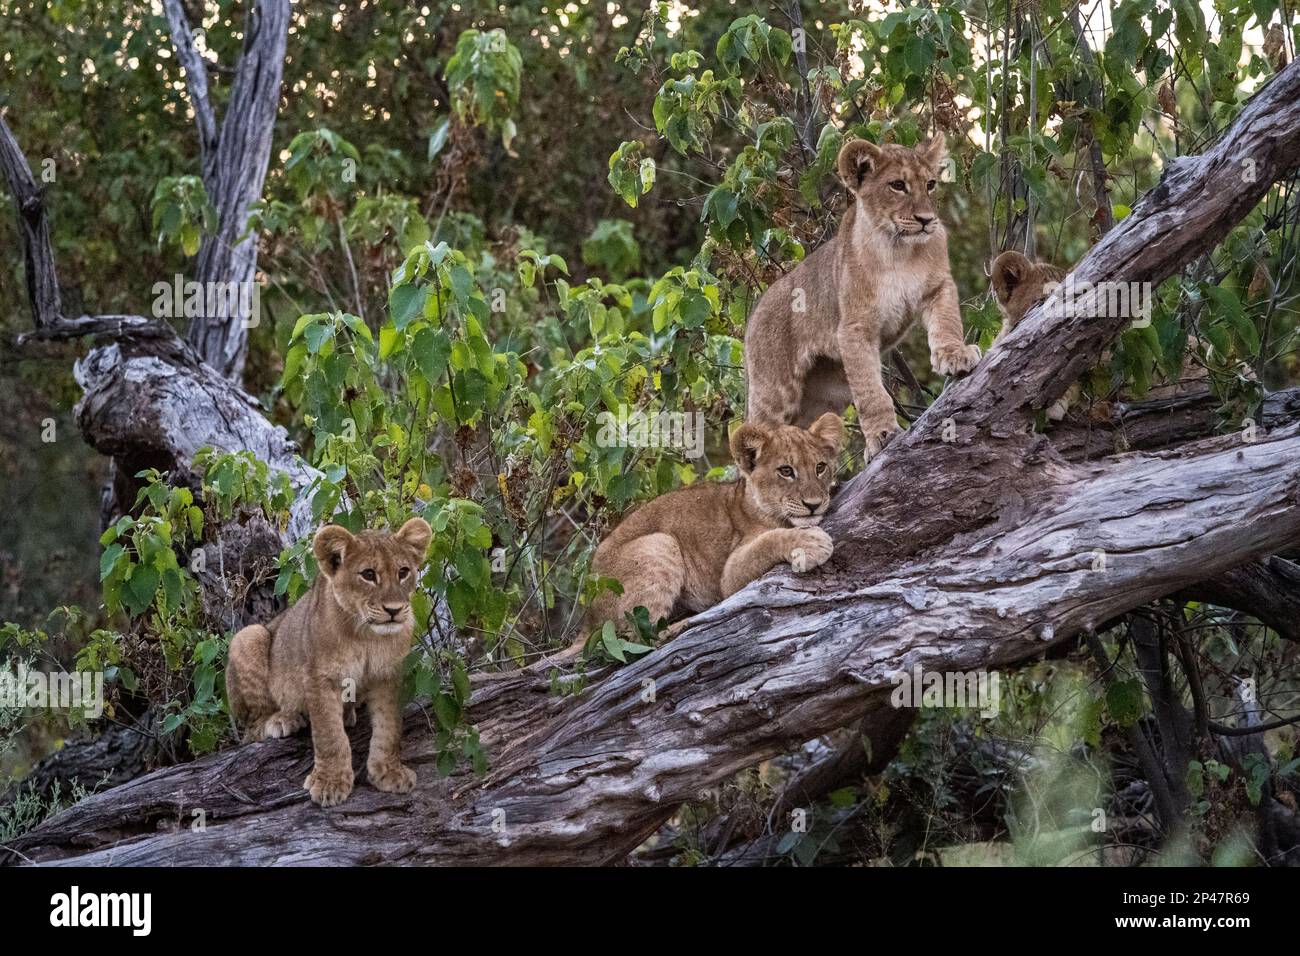 Africa, Botswana, Delta dell'Okavango. Tre leoni appollaiati su un tronco d'albero si affacciano sul Delta dell'Okavango. Foto Stock